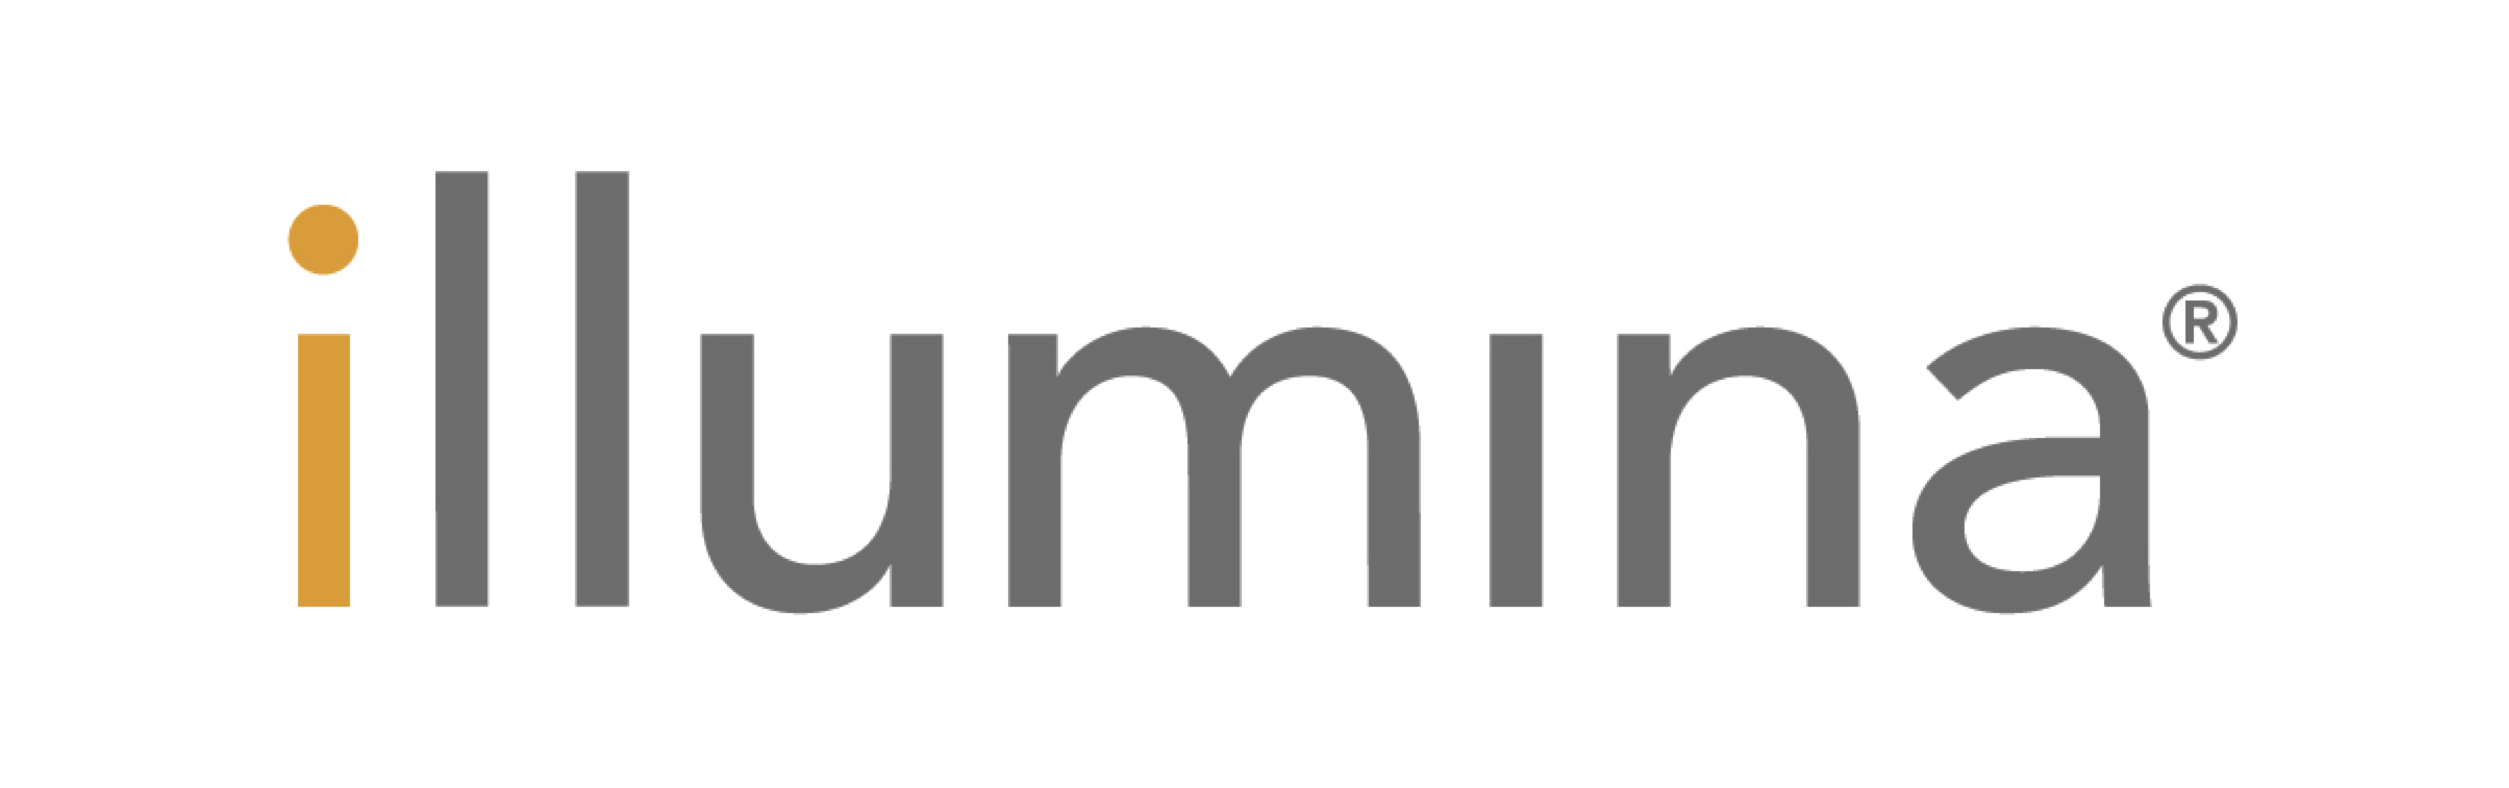 Illumina-02